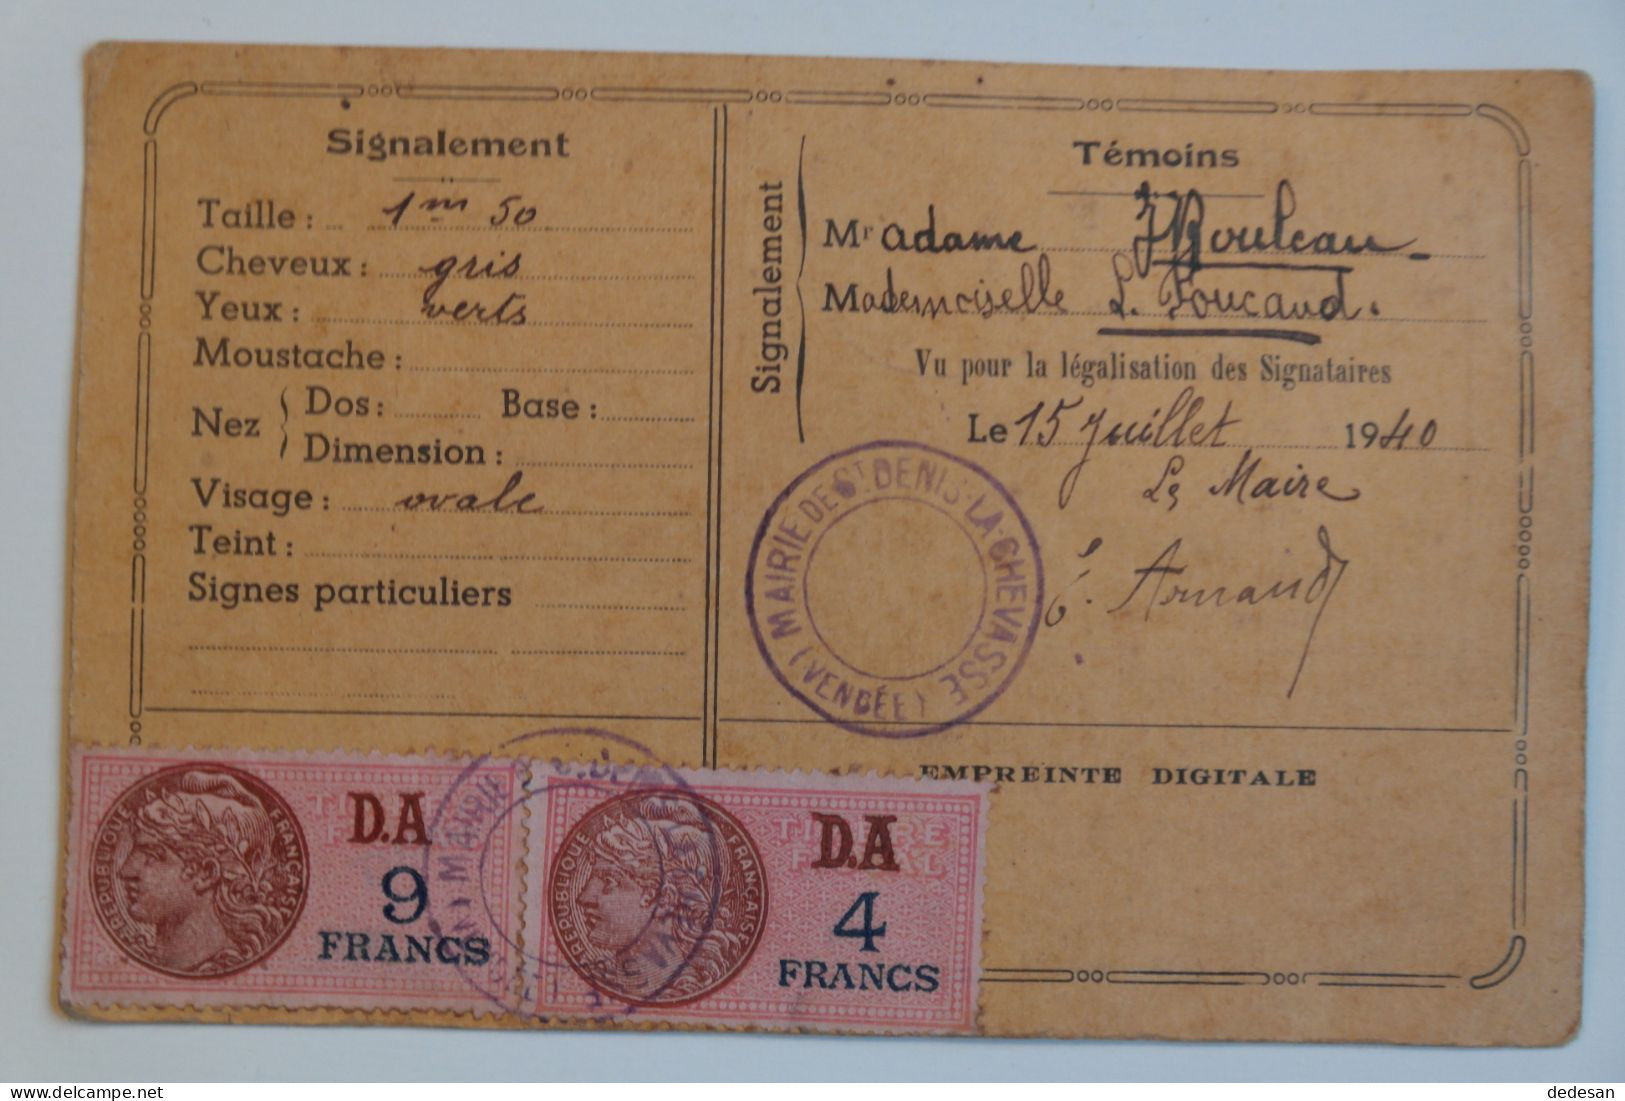 Carte Identité Juillet 1940 D'une Personne Née En 1873 - CHA01 - Historical Documents